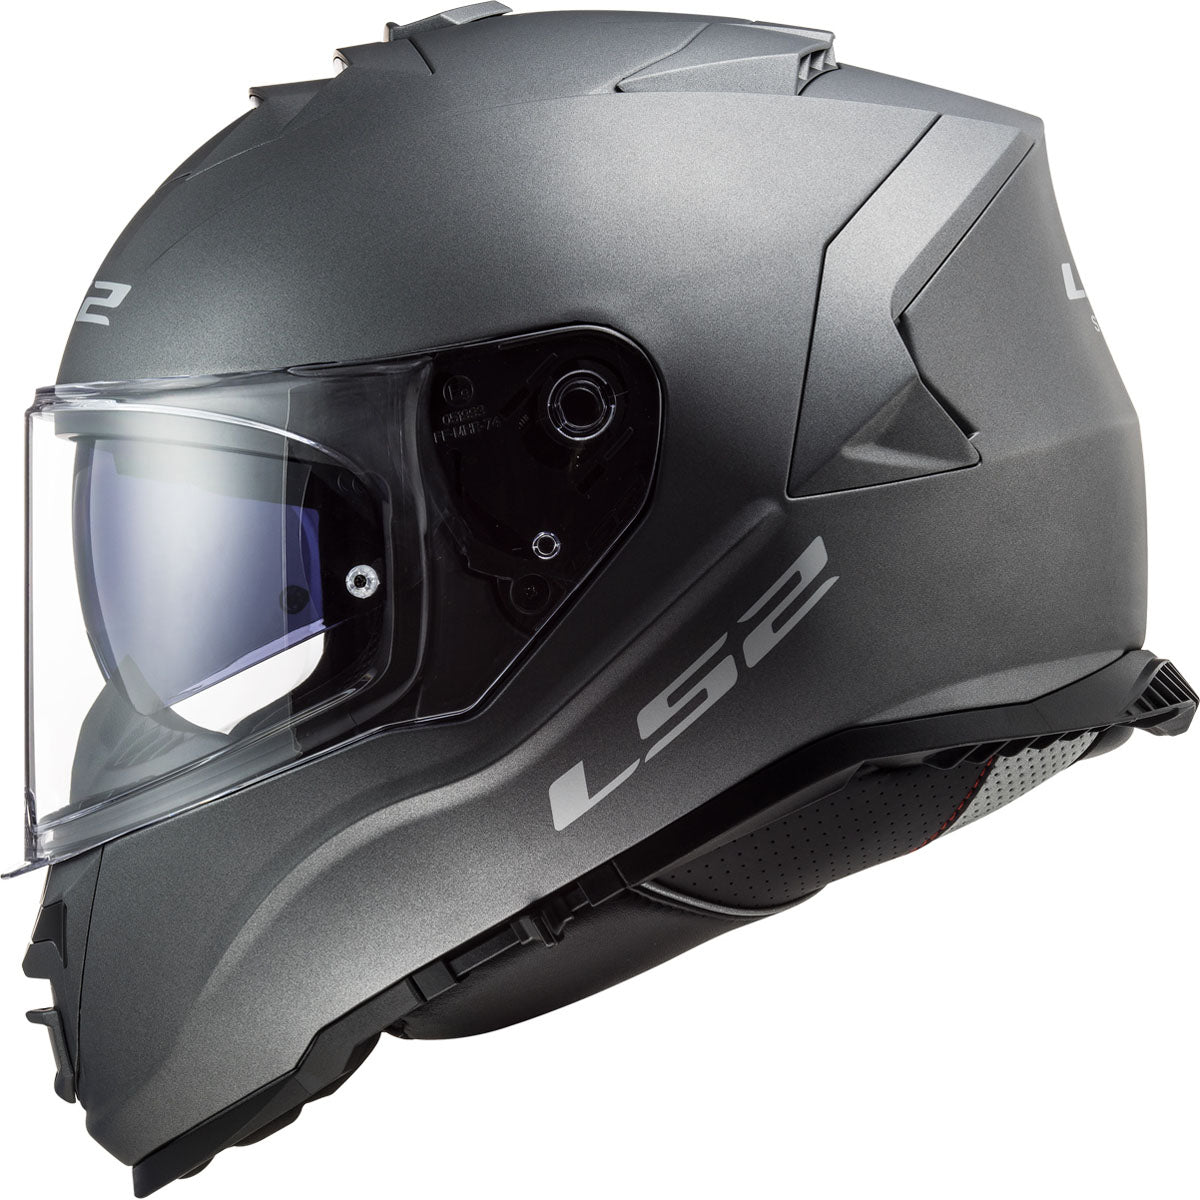 LS2 Assault Solid Helmet